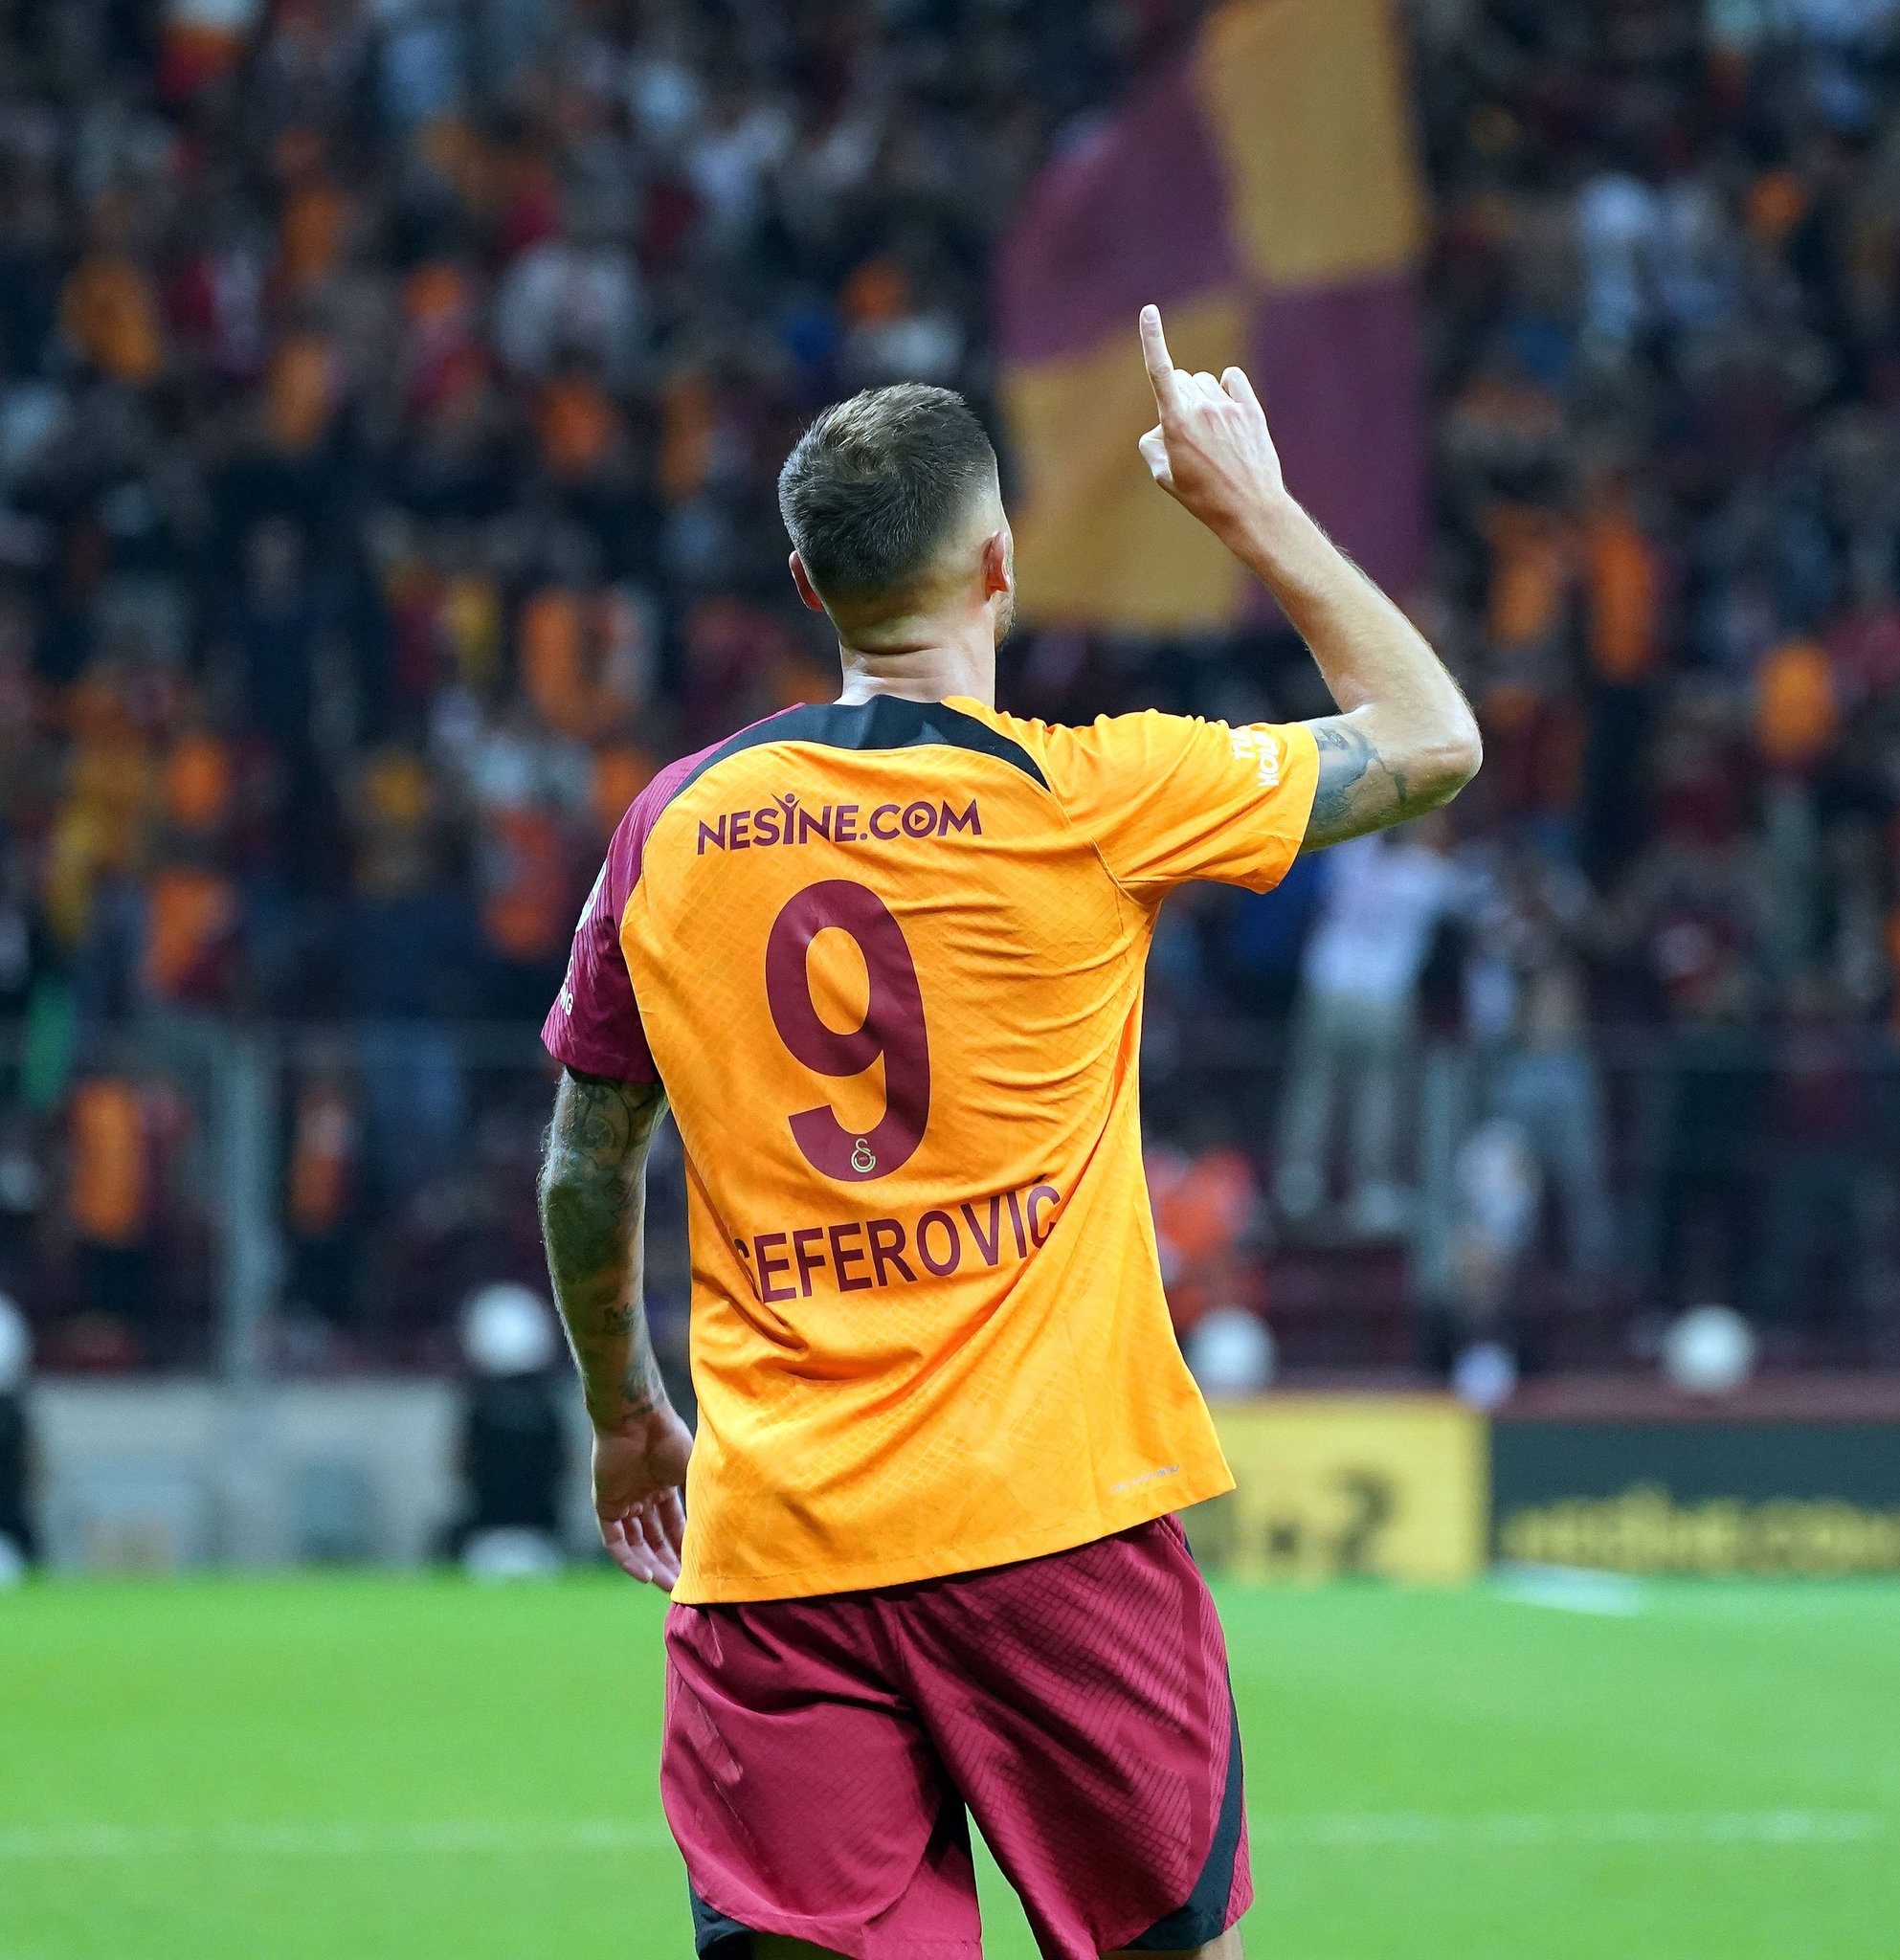 Haris Seferovic'ten transfer açıklaması! Galatasaray'dan ayrılacak mı? - 07/12/2022